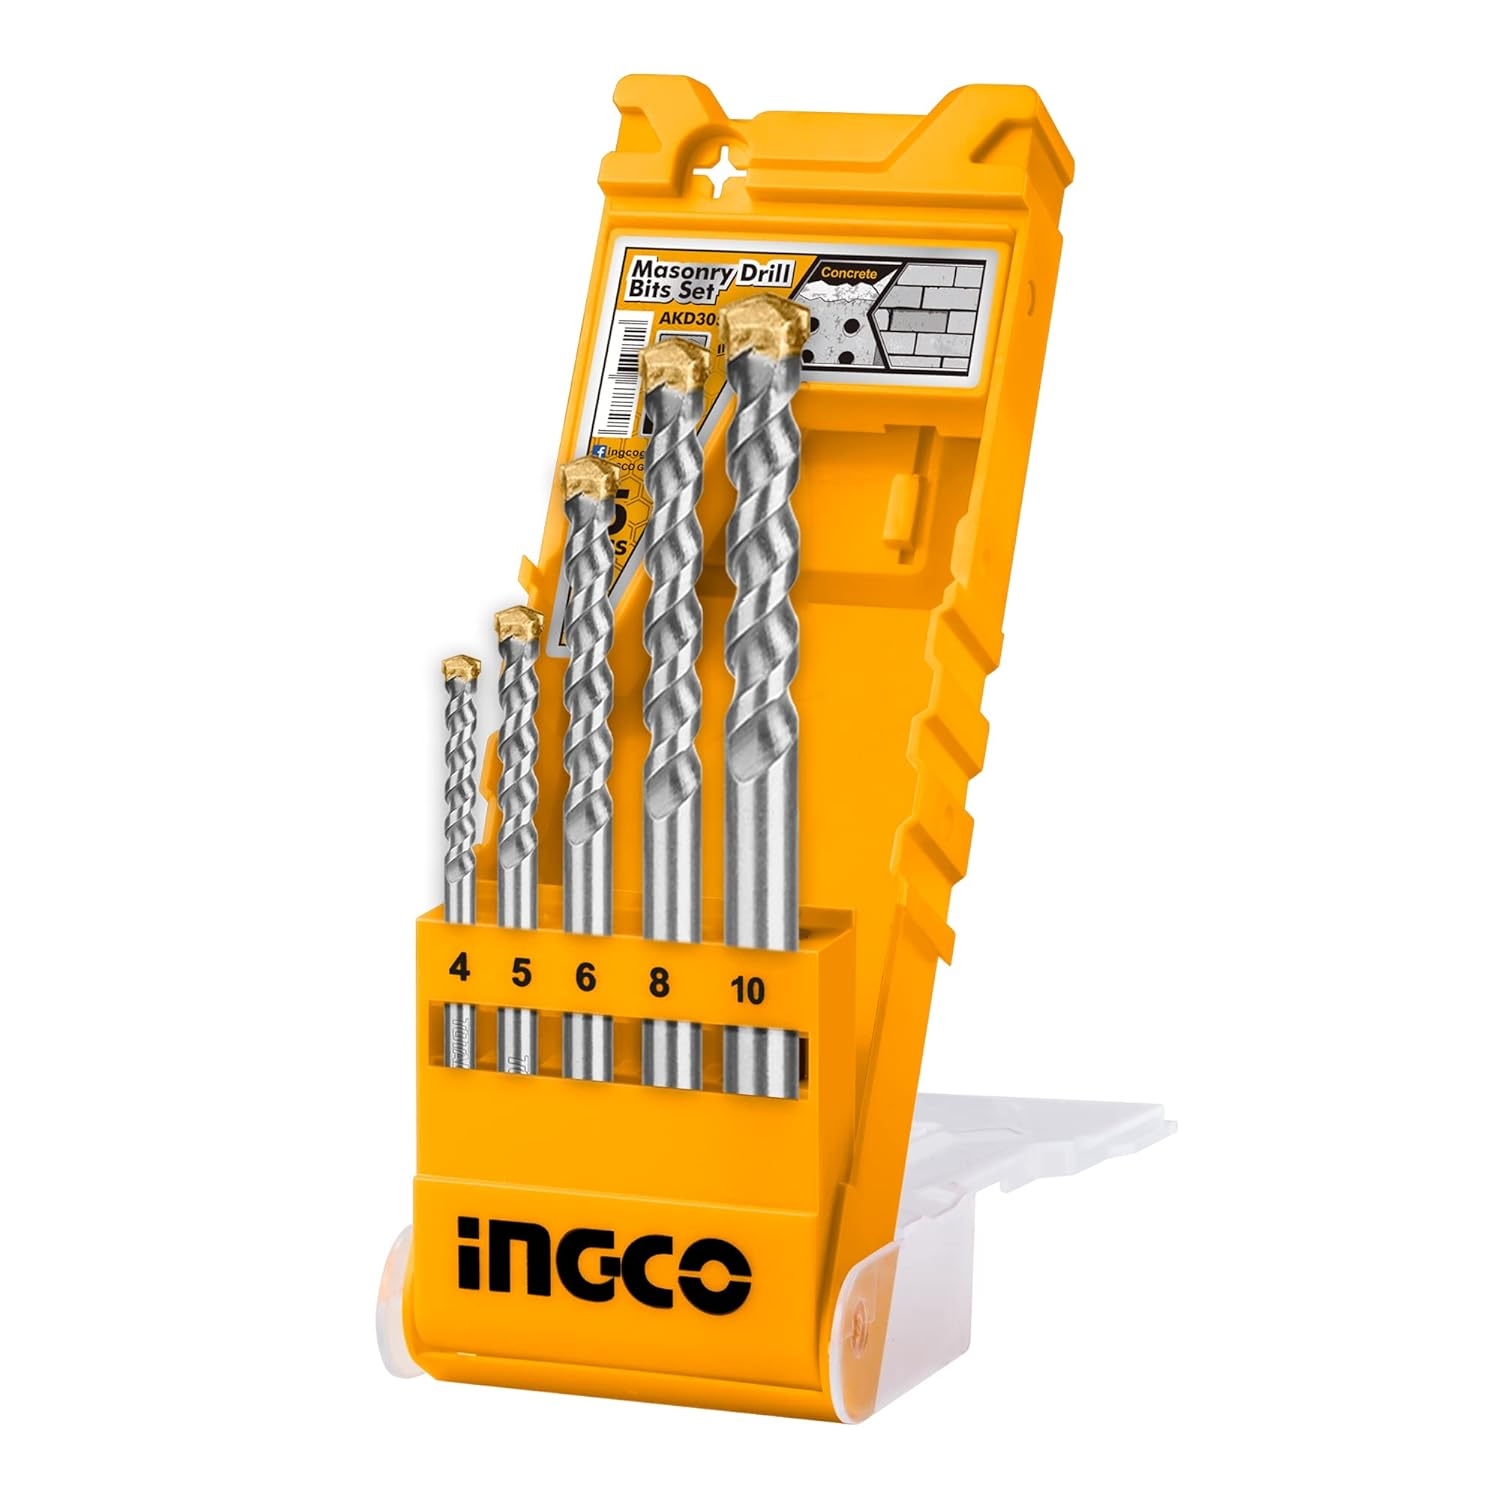 INGCO 5 Pcs Masonry Drill Bit Set | 4x75, 5x85, 6x100, 8x120, 10x120 Drill Bits Sizes